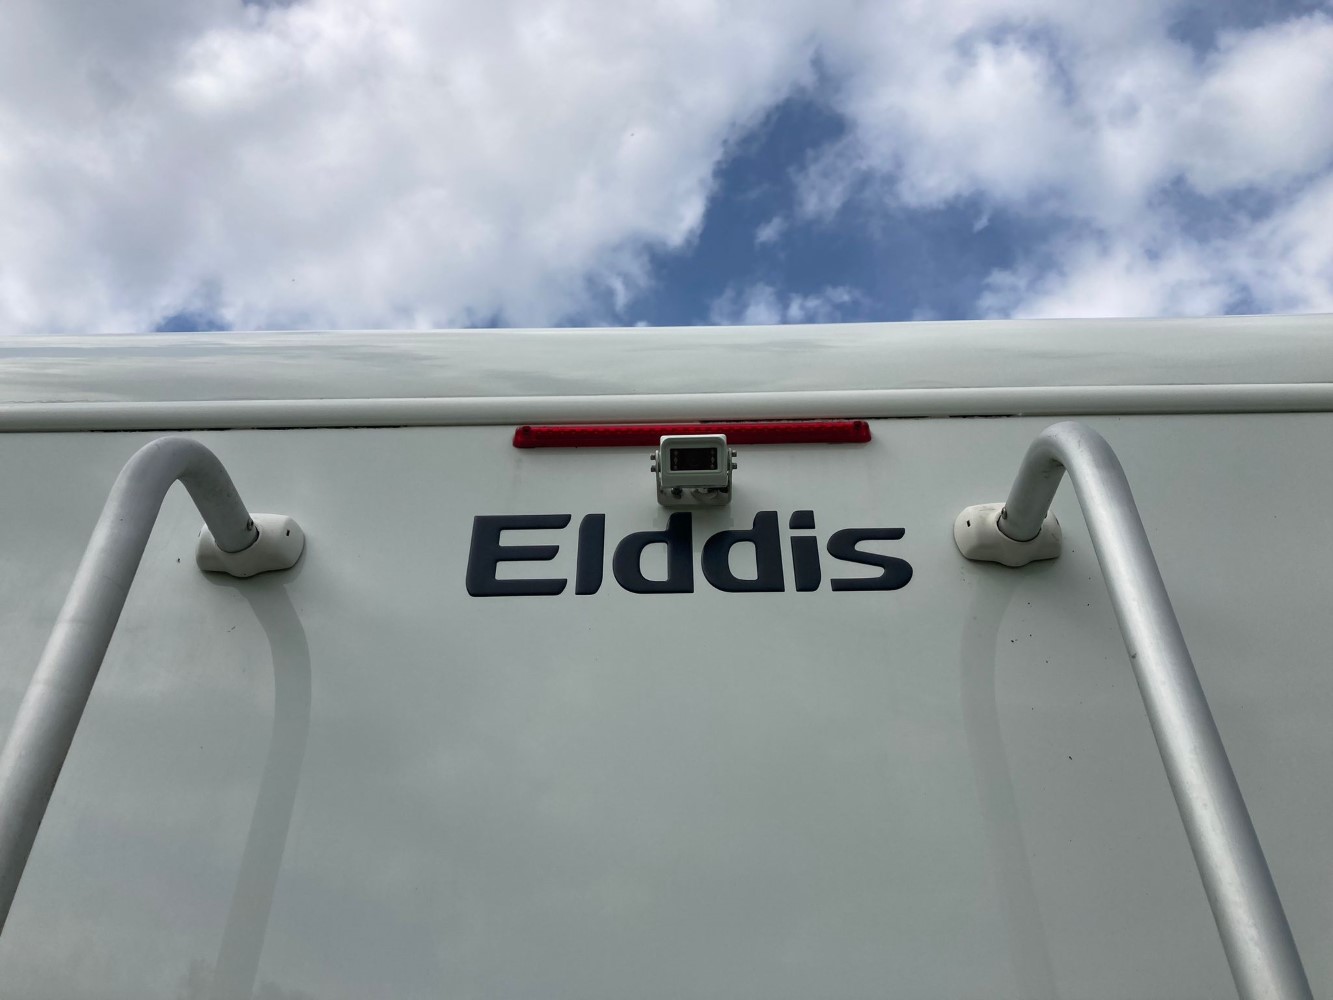 Elddis Autoquest 155 Riva Gold